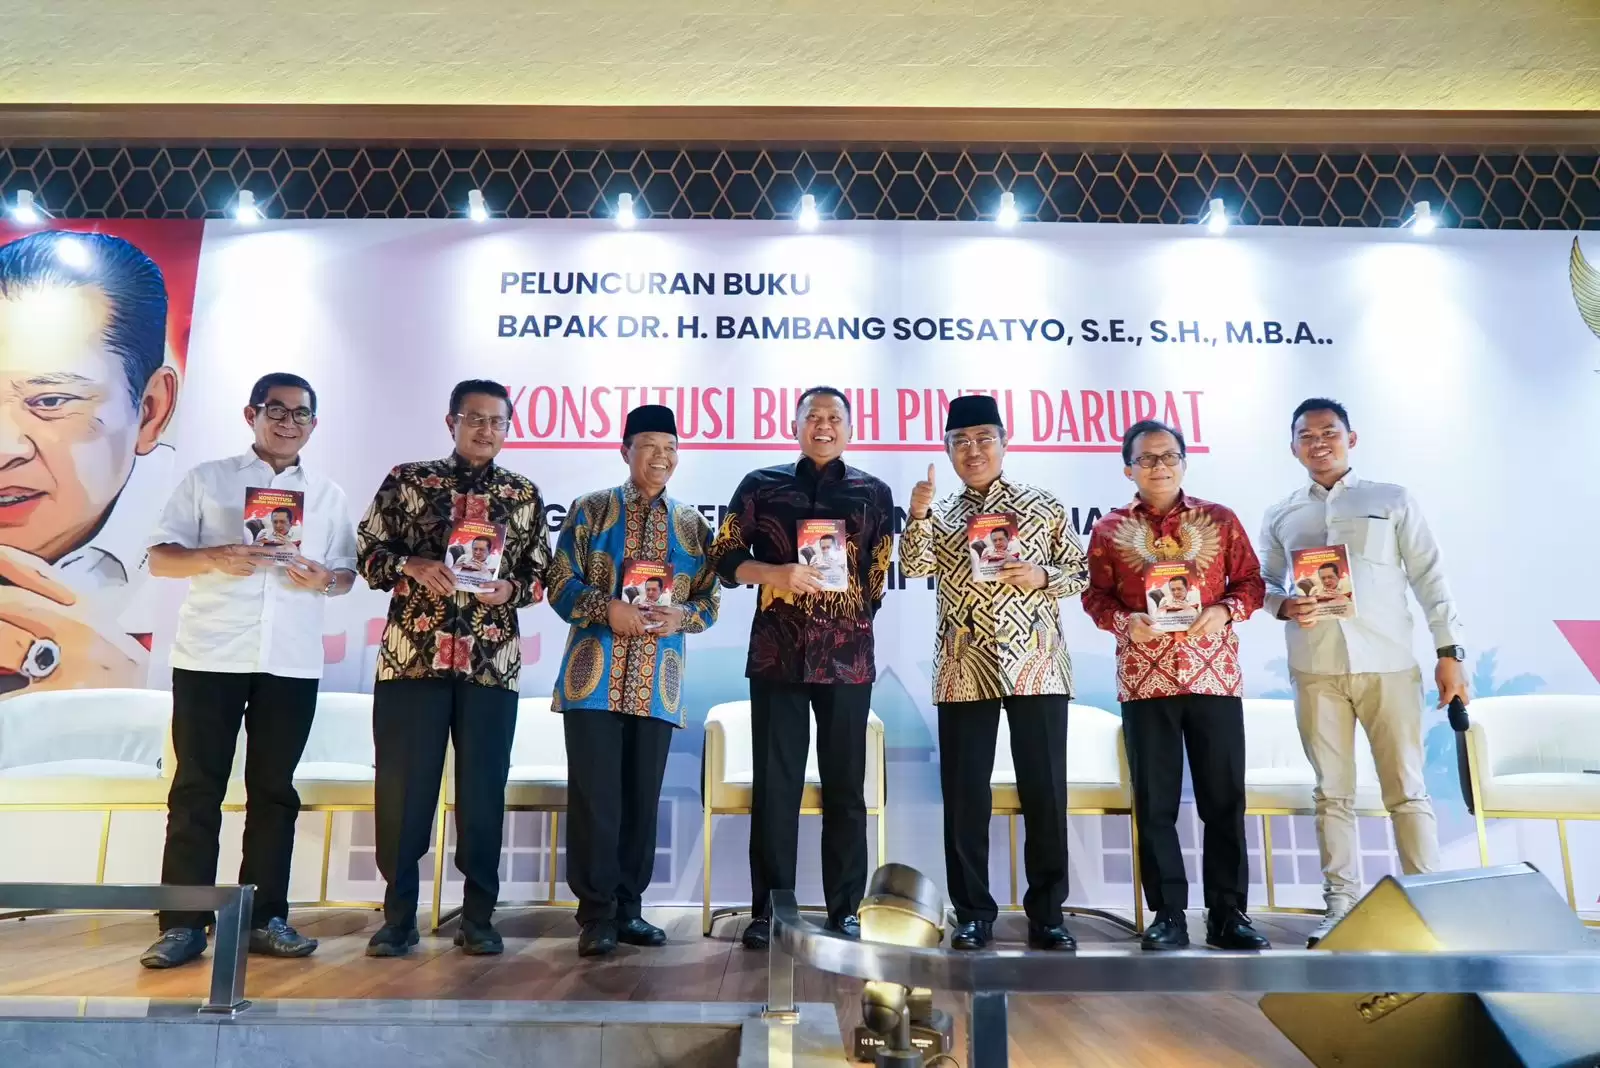 Peluncuran buku ke-32 karya Ketua MPR Bambang Soesatyo yang berjudul Konstitusi Butuh Pintu Darurat [Foto: Doc. MPR]